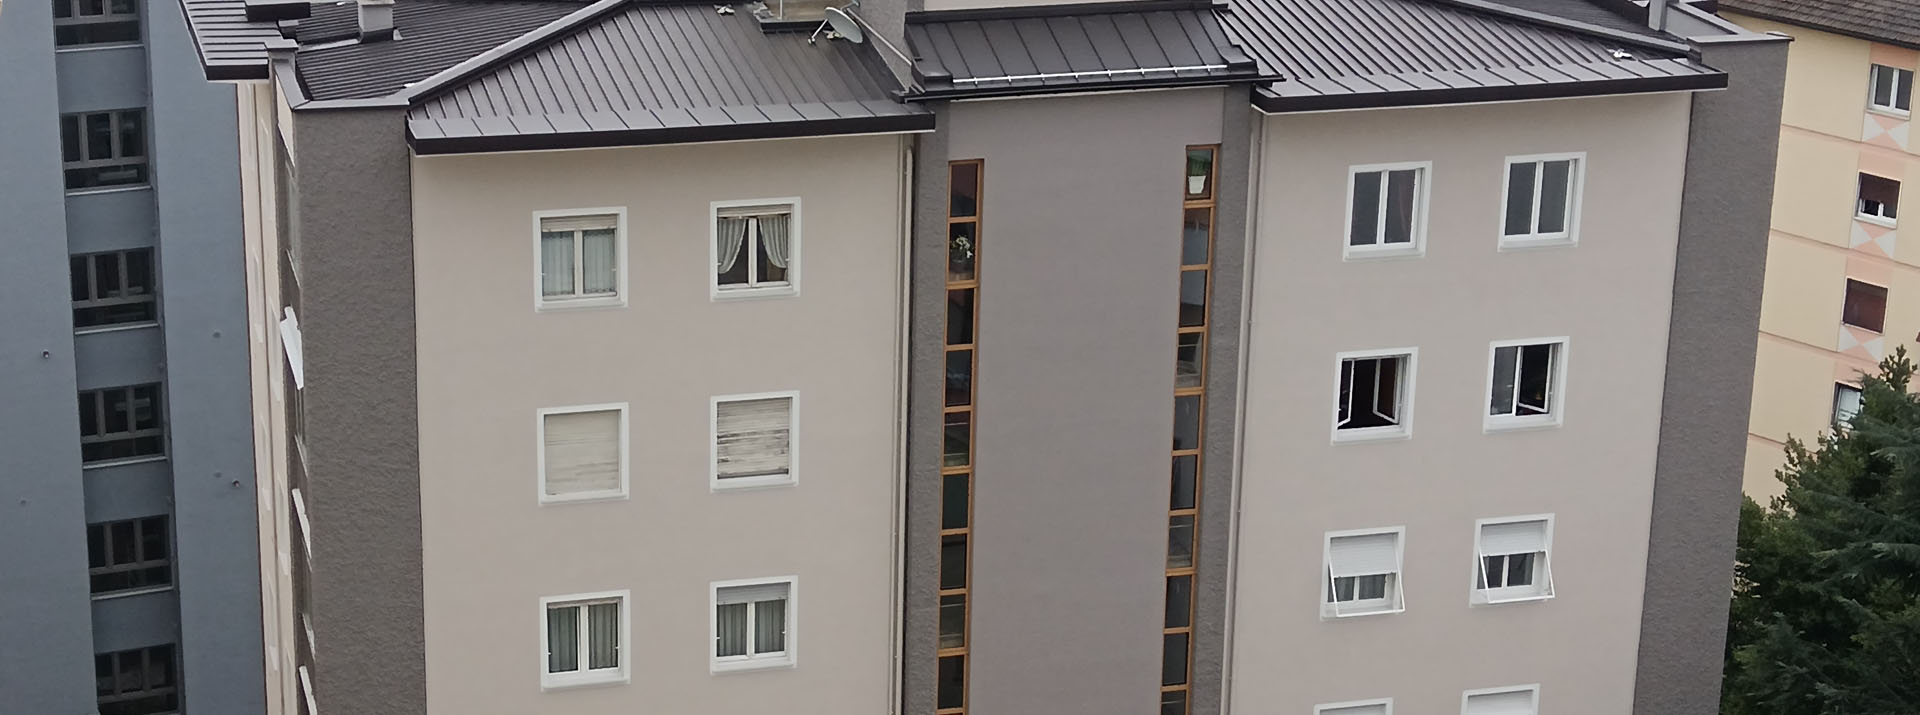 Risanamento della facciata di un condominio a Bolzano, Boero